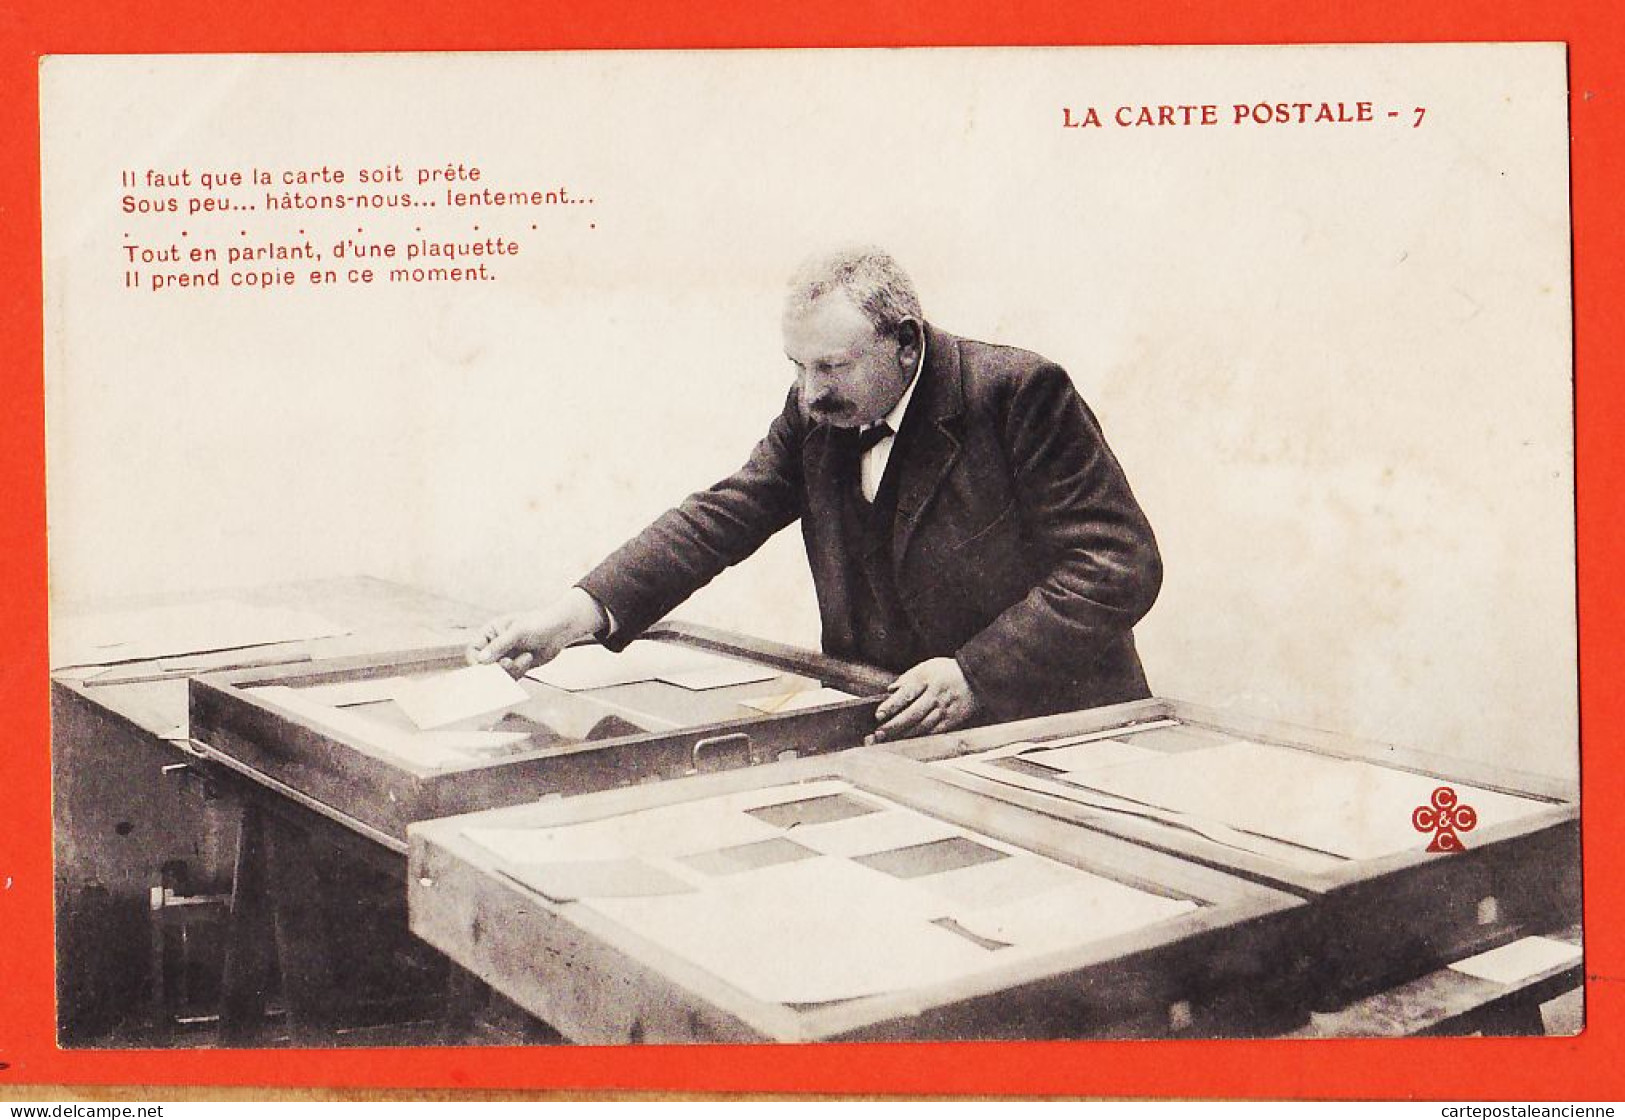 06288 / ♥️ ⭐ ◉  Métier Photographe Editeur LA CARTE POSTALE (7) Copie Plaquette Hâtons-Nous 1900s TREFLE CCCC C.C.C.C - Craft